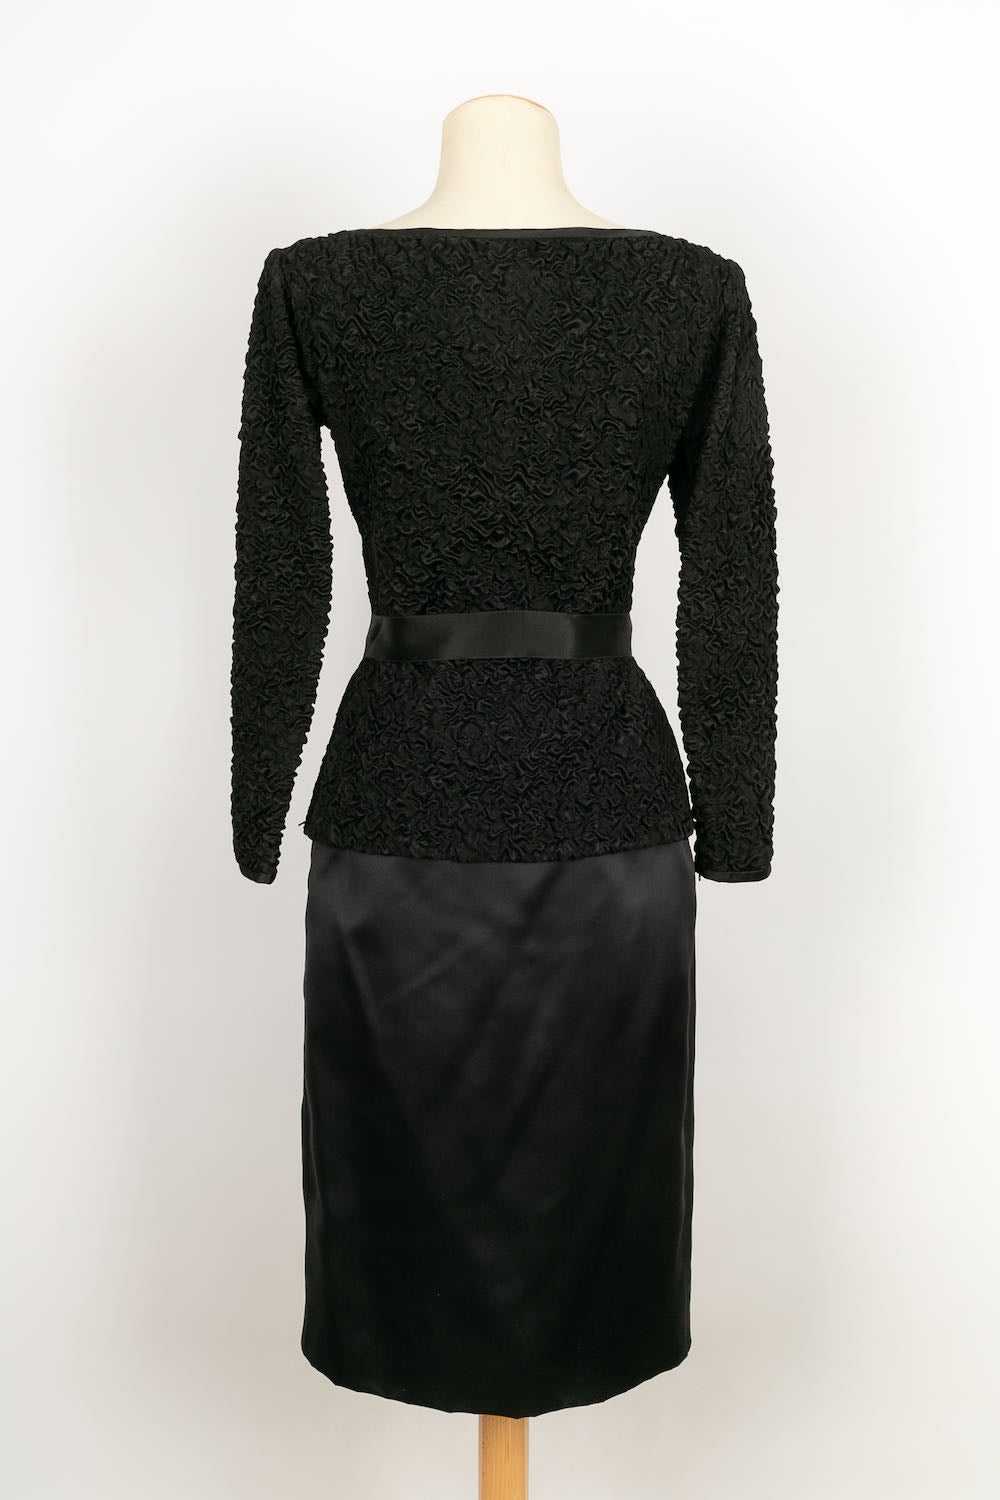 Yves Saint Laurent Haute Couture set - image 3